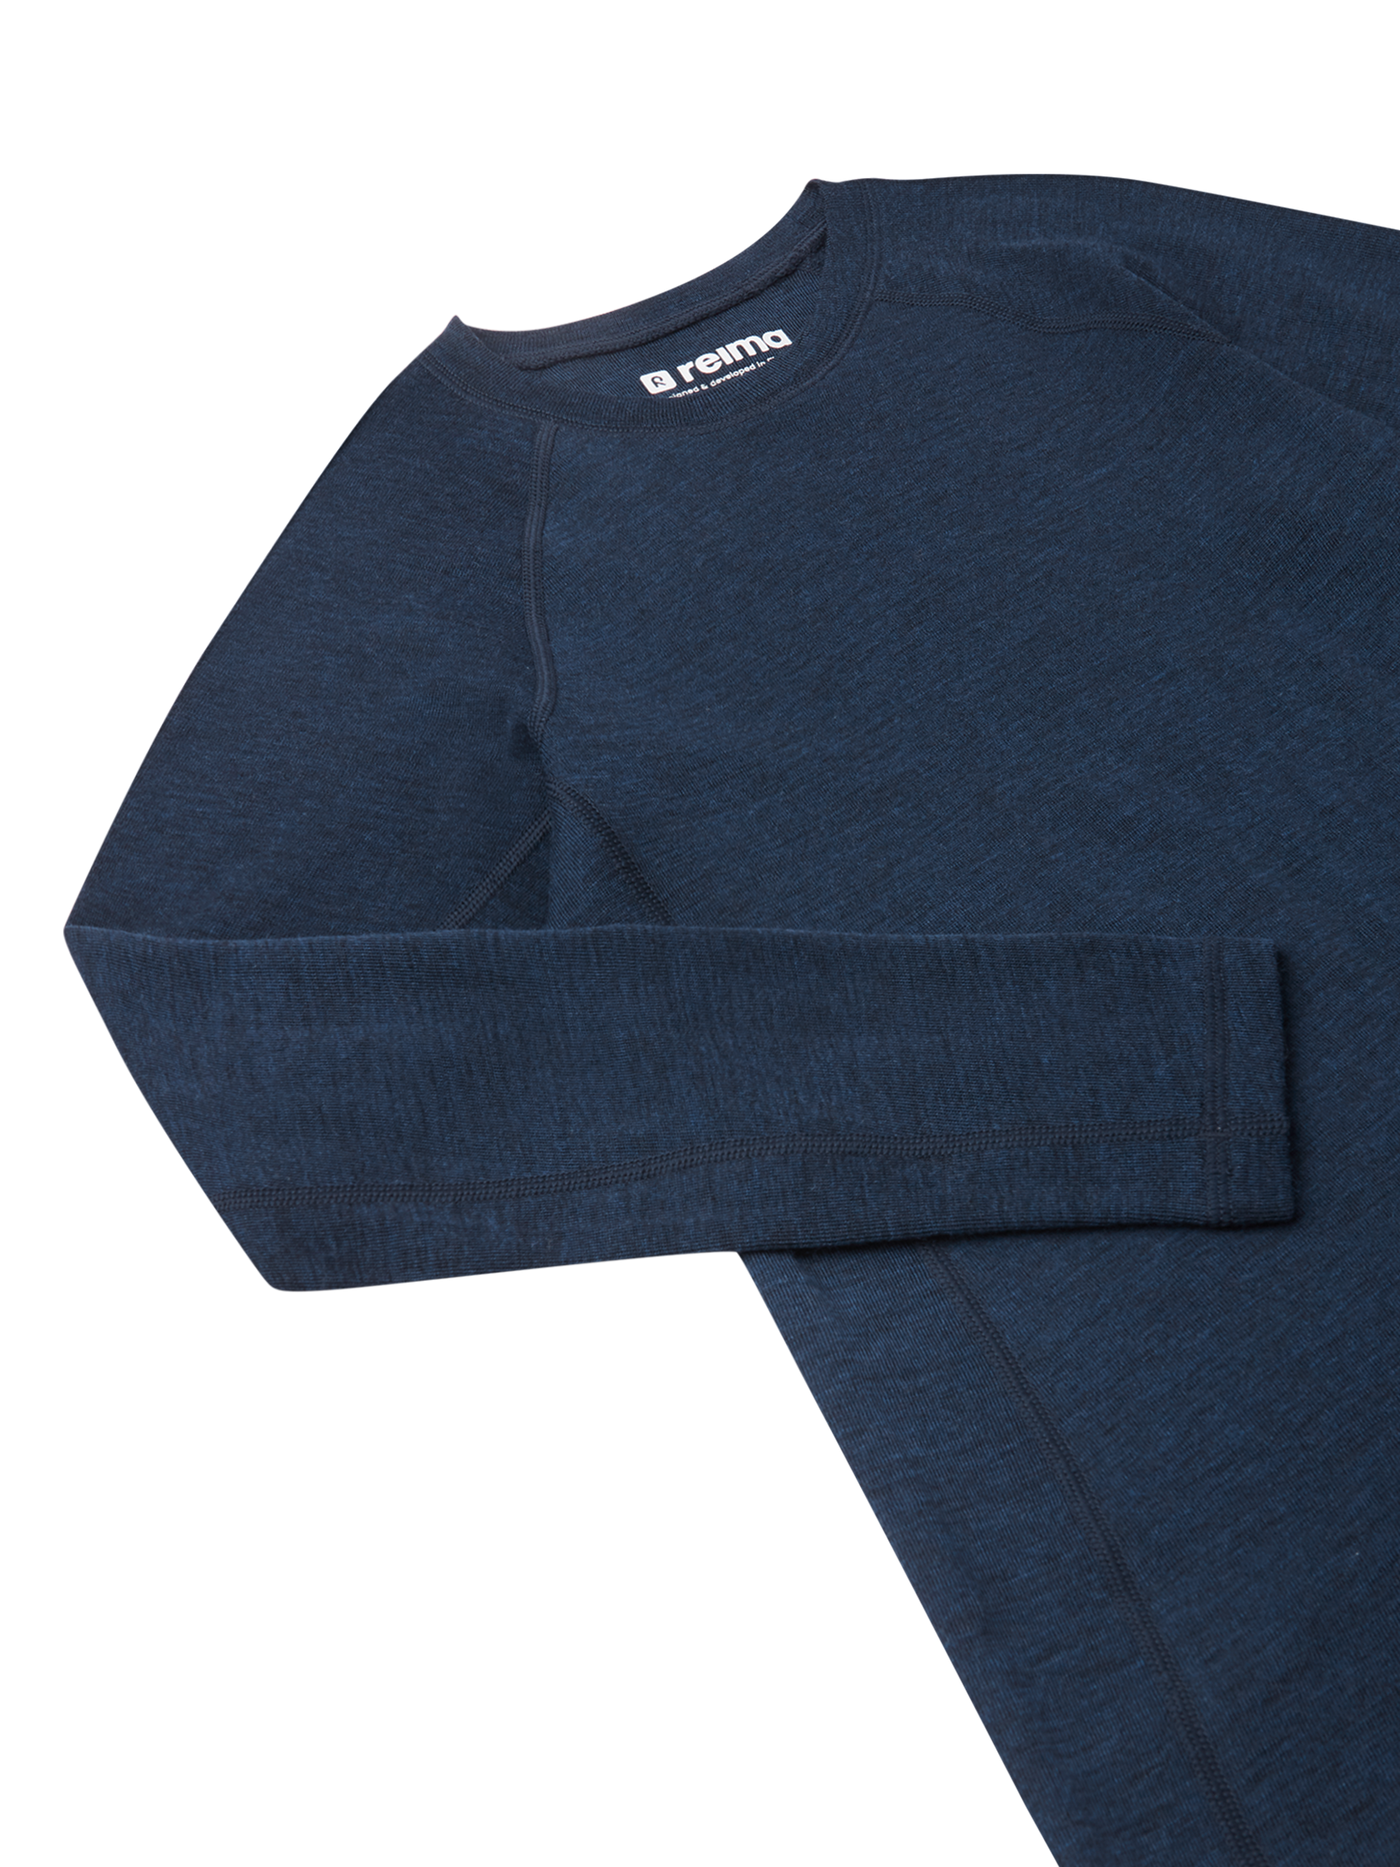 Reiman Thermal Set Kinsei -merinovillasetin tummansininen paita lähikuvassa